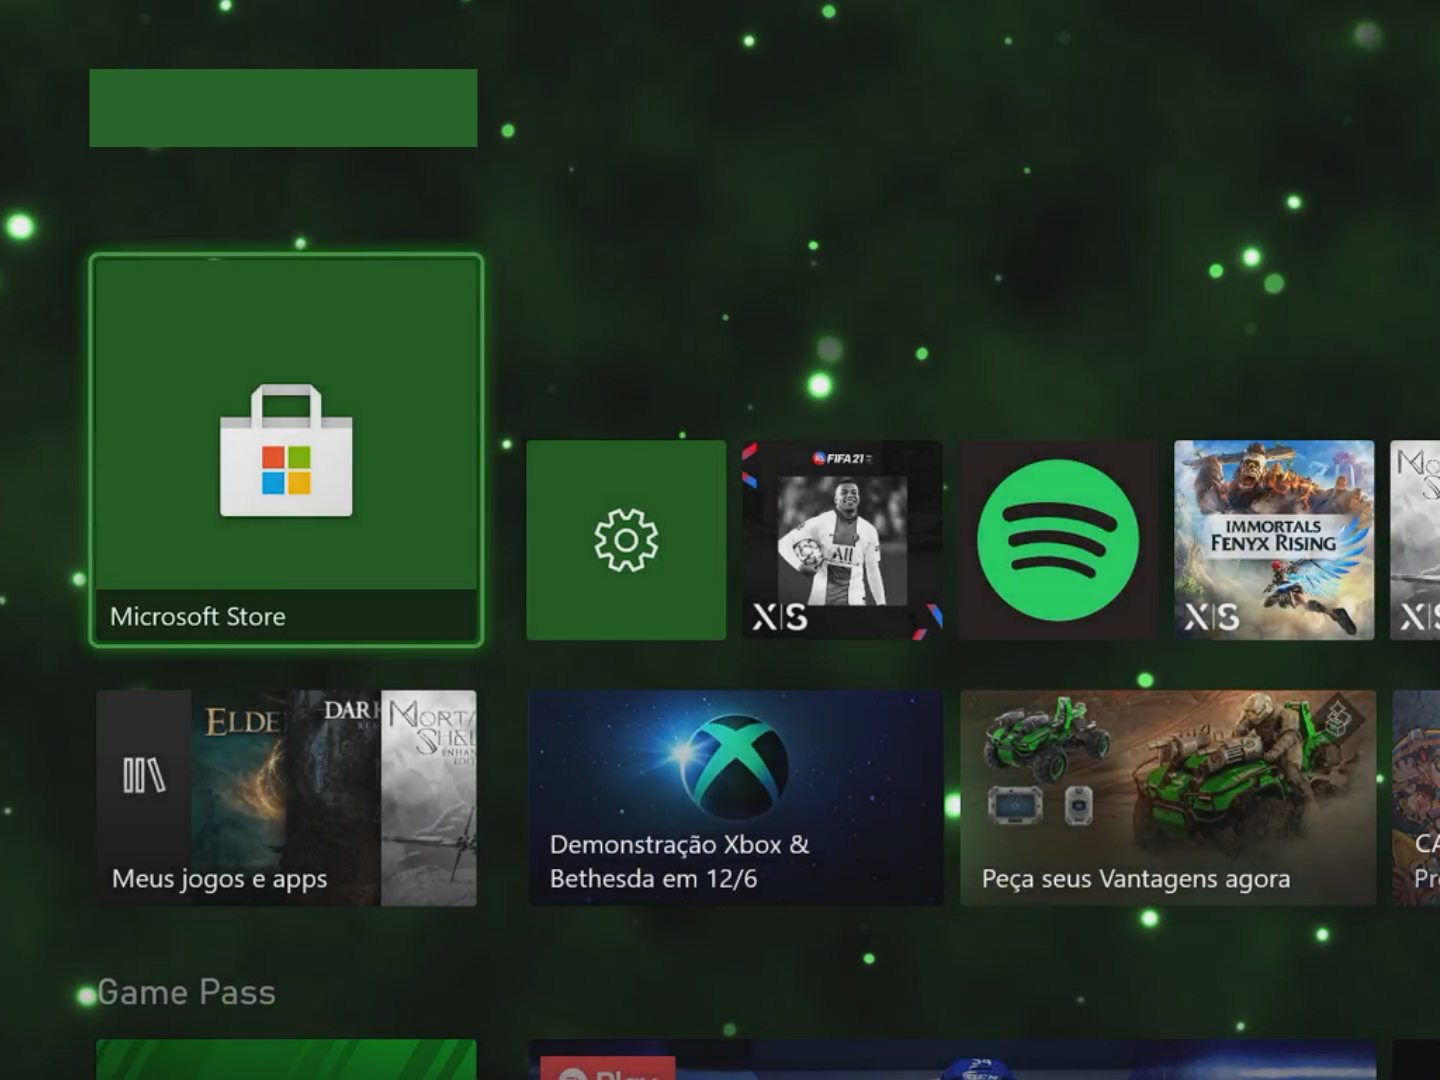 God Gamers - A partir de agora, todos os jogadores do Xbox podem acessar  esses jogos gratuitos com ou sem uma assinatura Xbox Live Gold: https: //  xbx.lv/2PbqX7C Multijogador online, jogos grátis